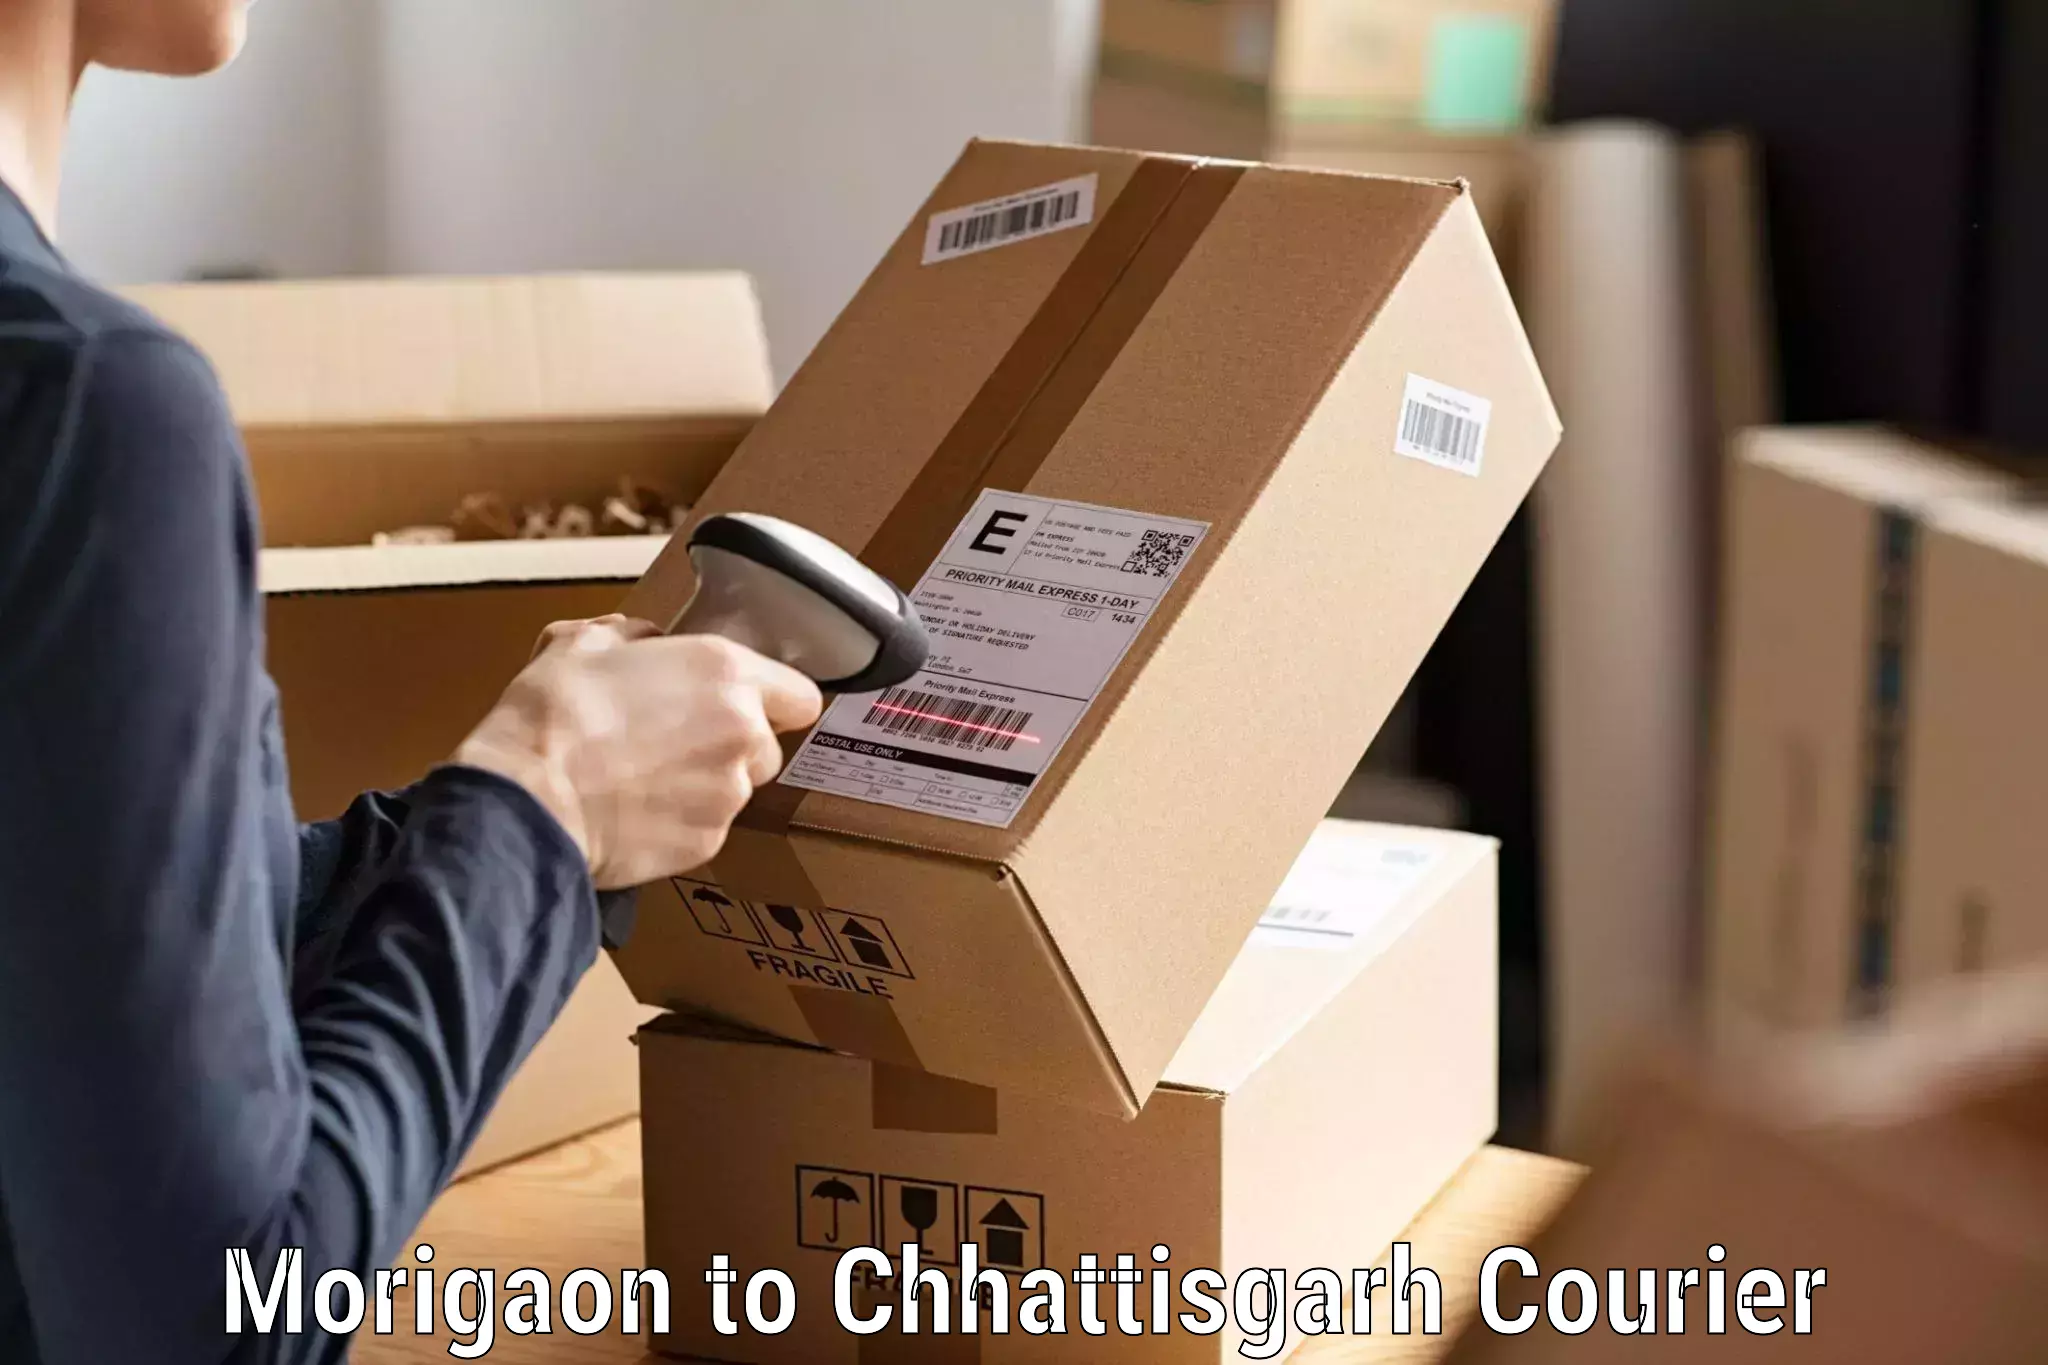 Reliable logistics providers Morigaon to Chhattisgarh